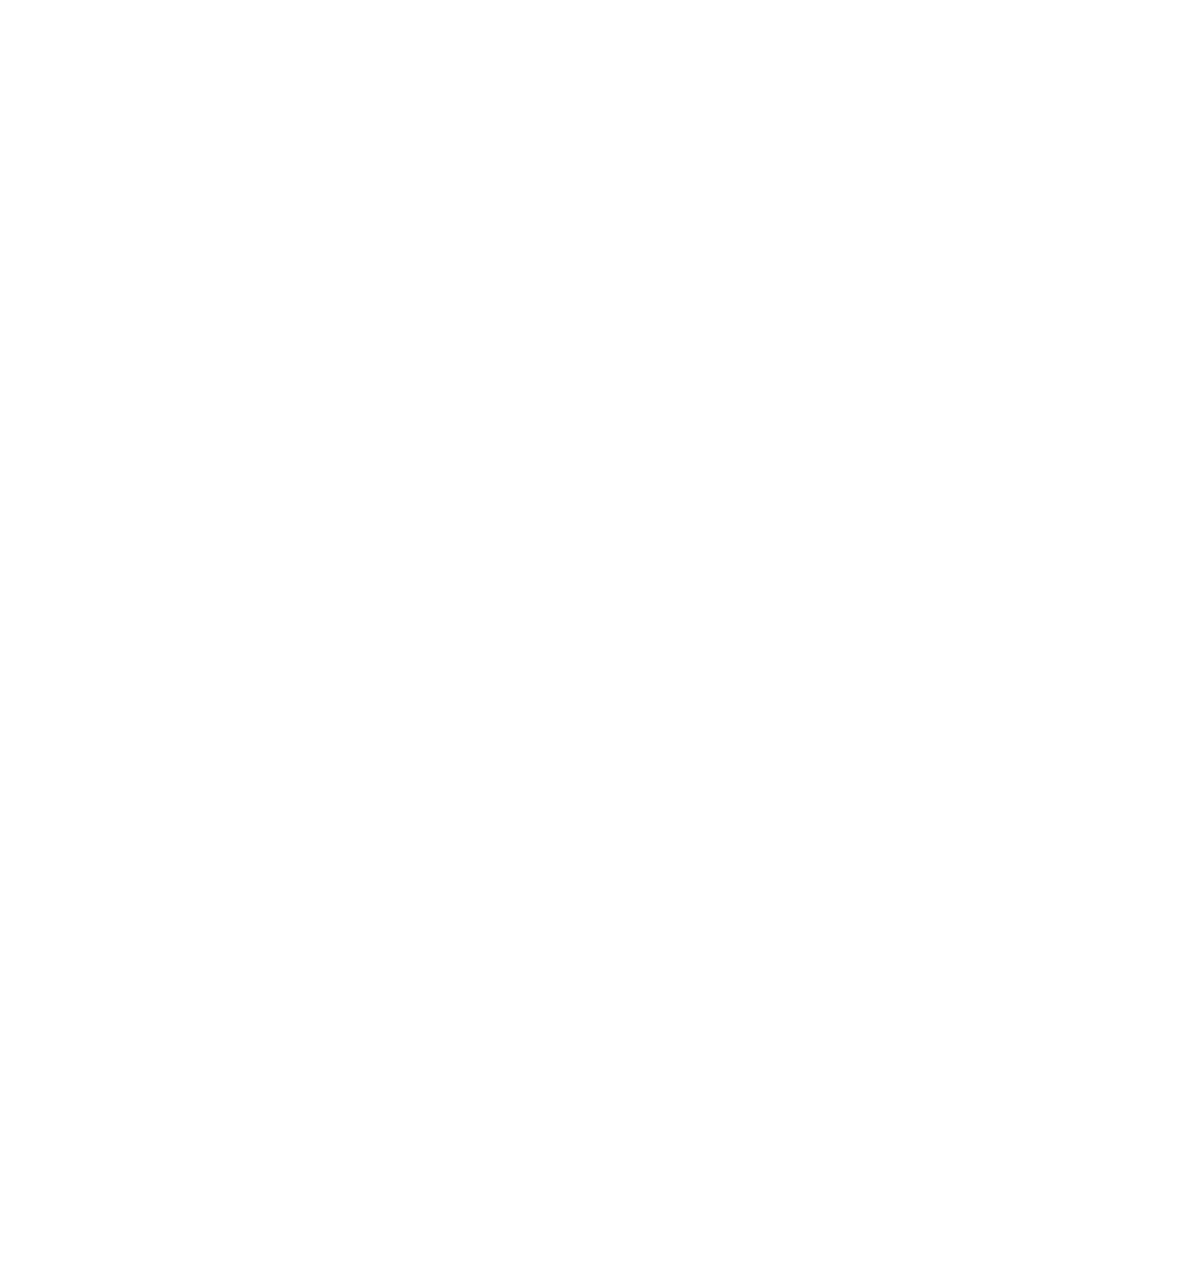 Иллюстрация Рисовать легко Большой творческий челлендж Звездная ночь Ван Гога Рисуем без страха скетчи Школа акварели